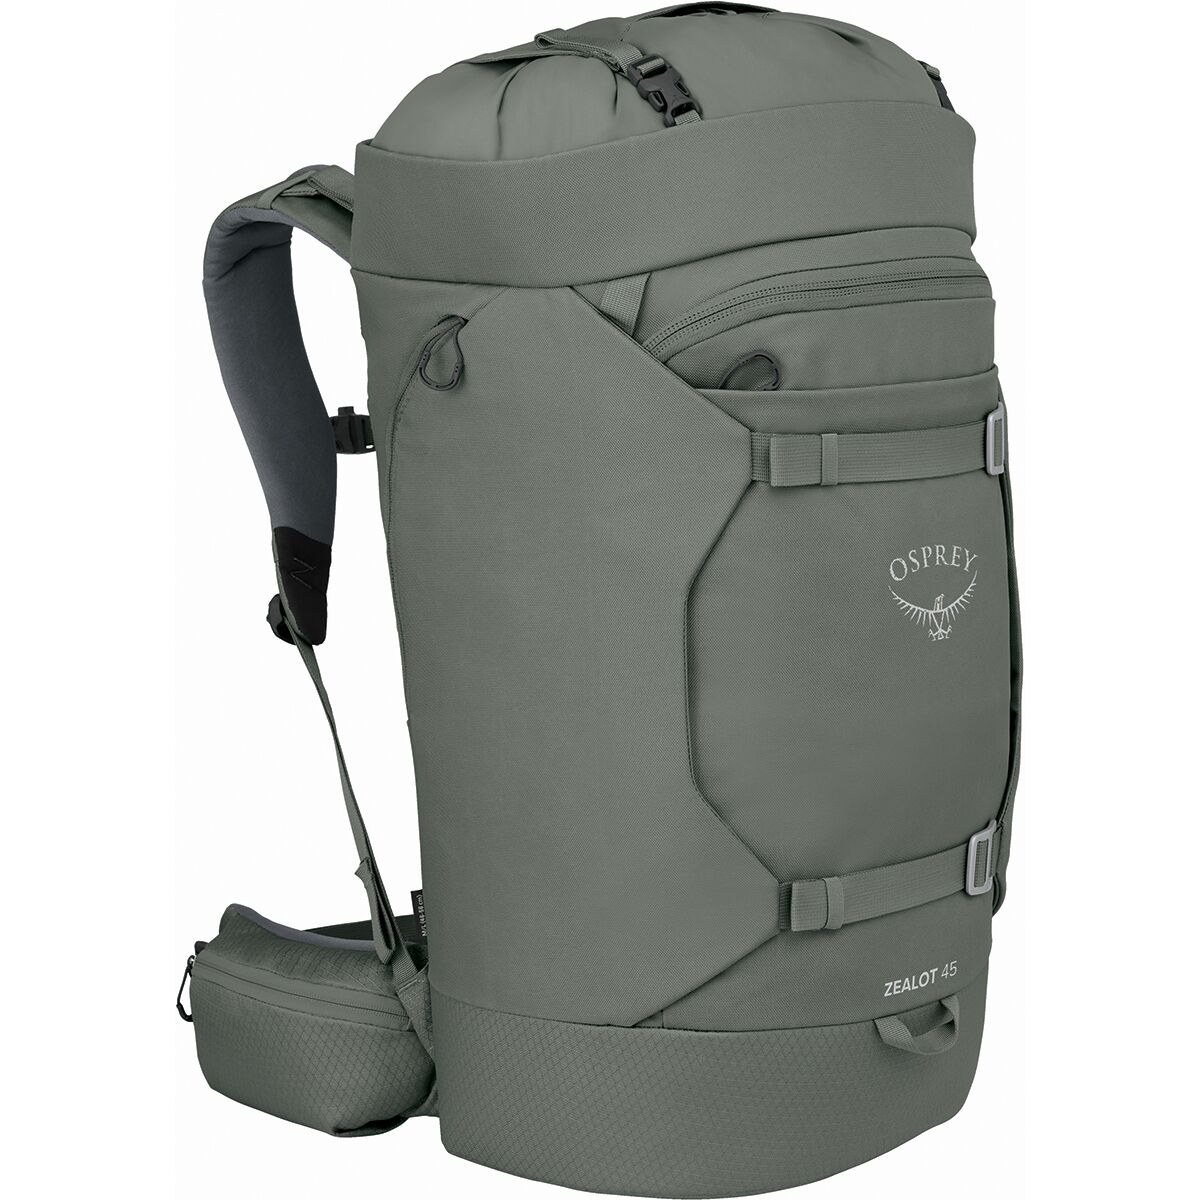 Osprey Packs Zealot 45L Backpack